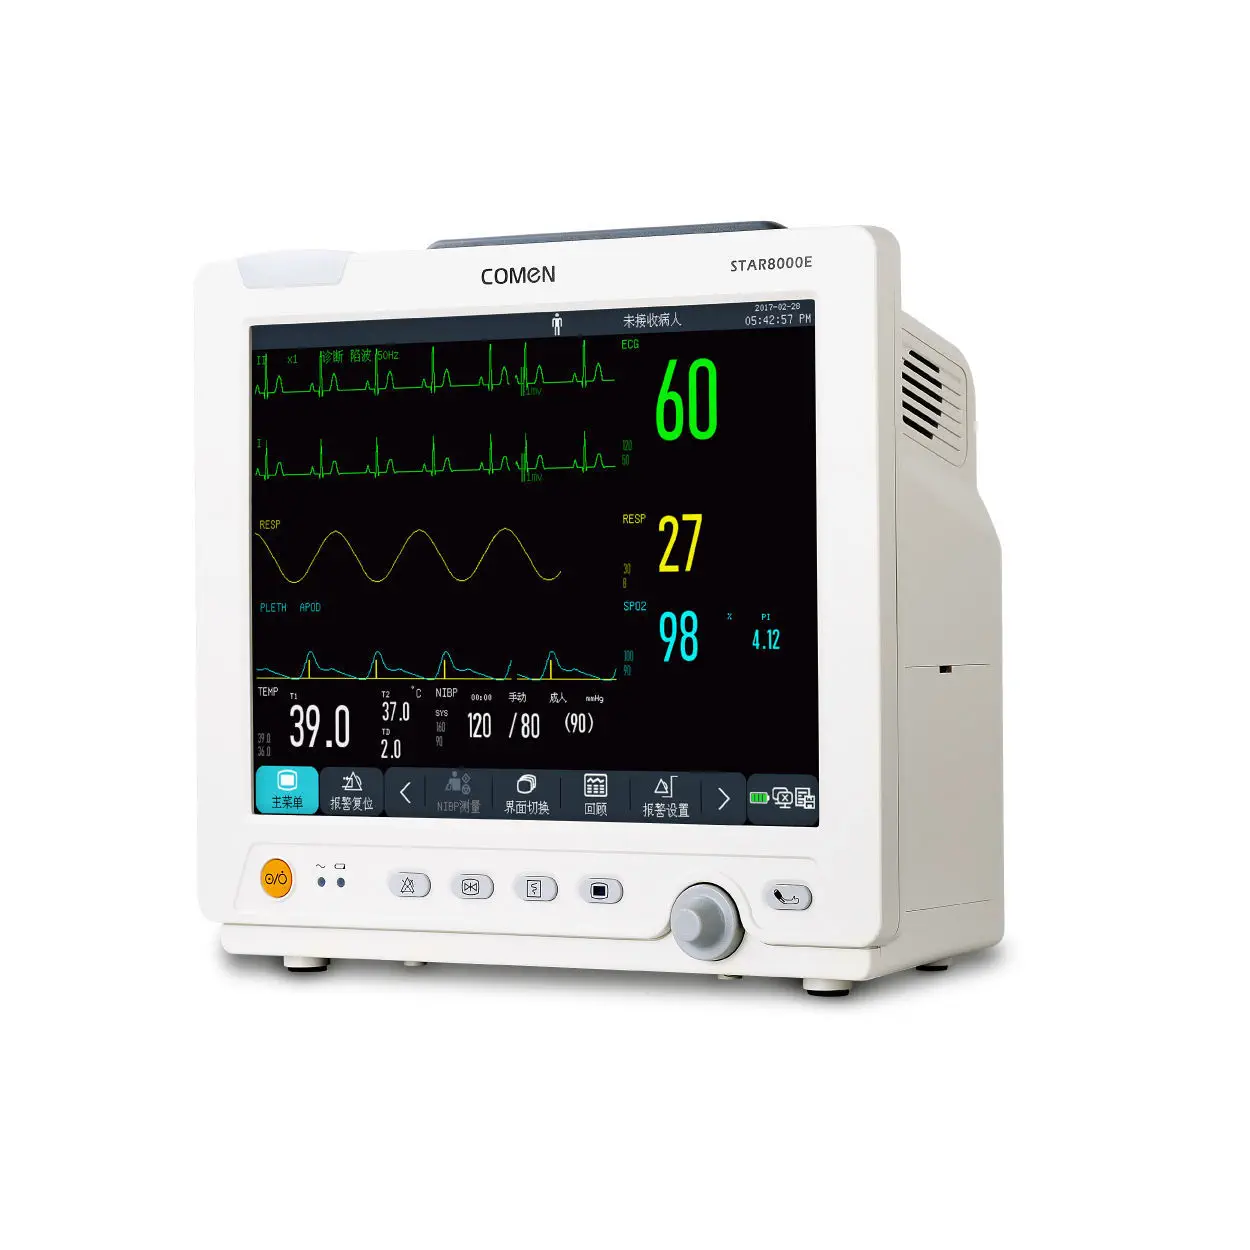 เครื่องติดตามการทำงานของหัวใจและสัญญาณชีพอัตโนมัติ  Bedside multi-parameter monitor STAR8000 series  Comen